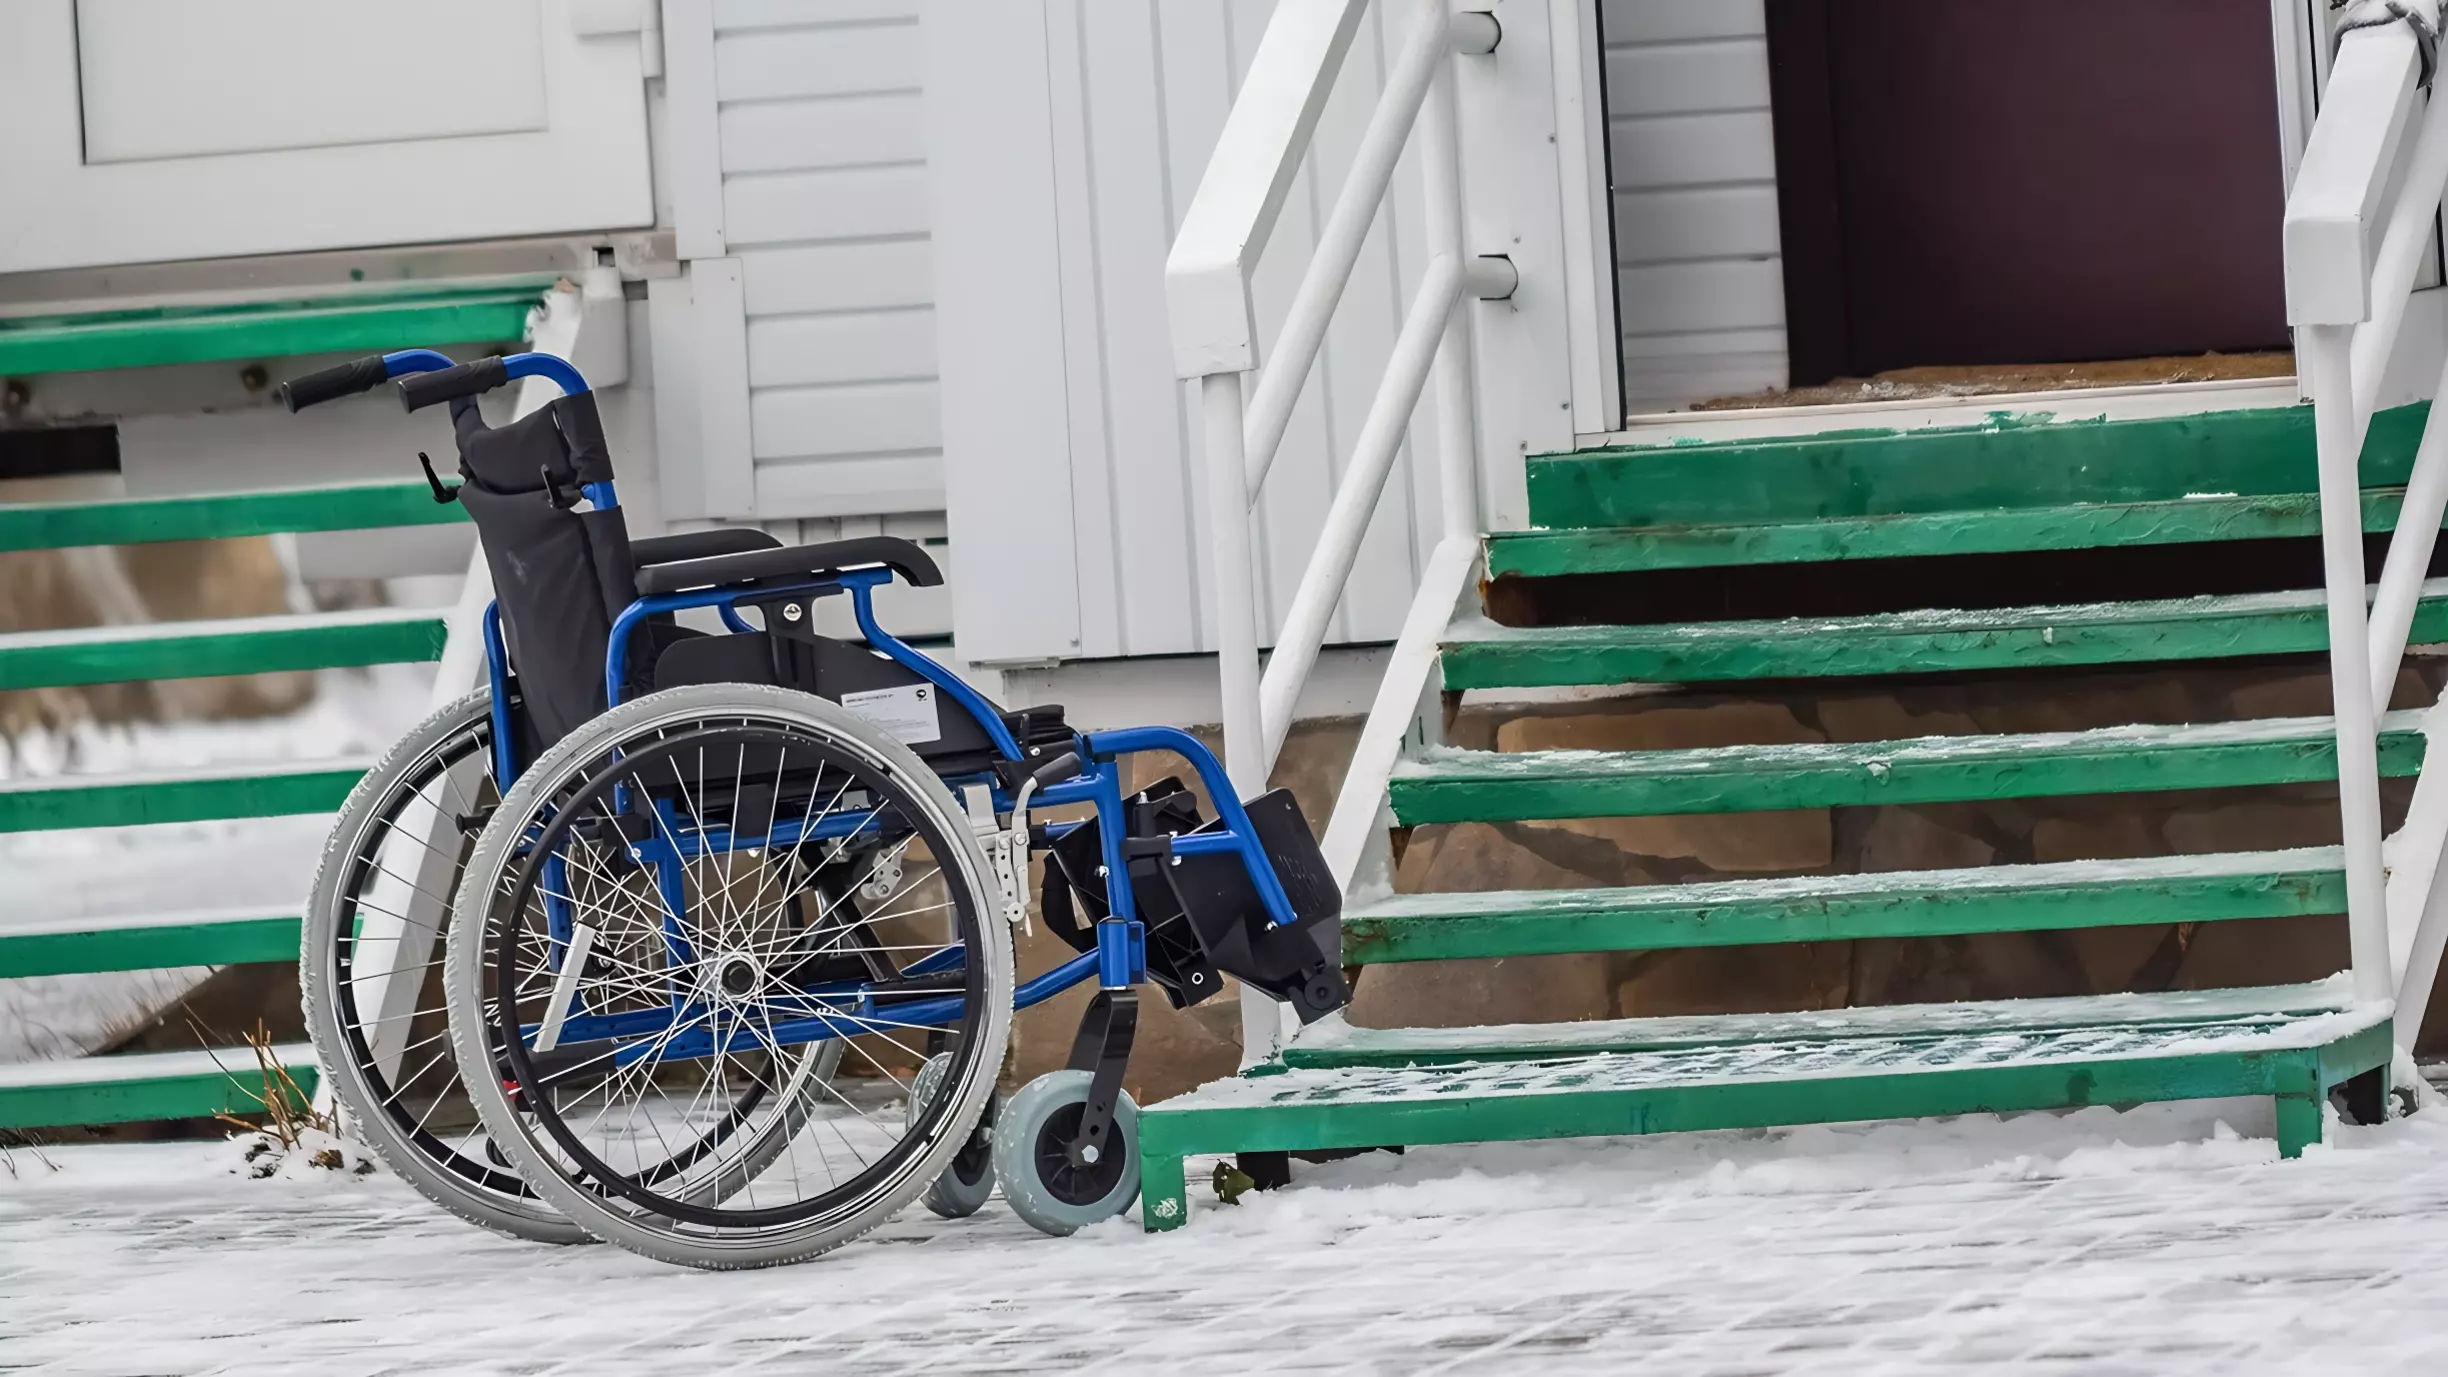 Пять кочёвских инвалидов продолжают в суде бороться за средства реабилитации